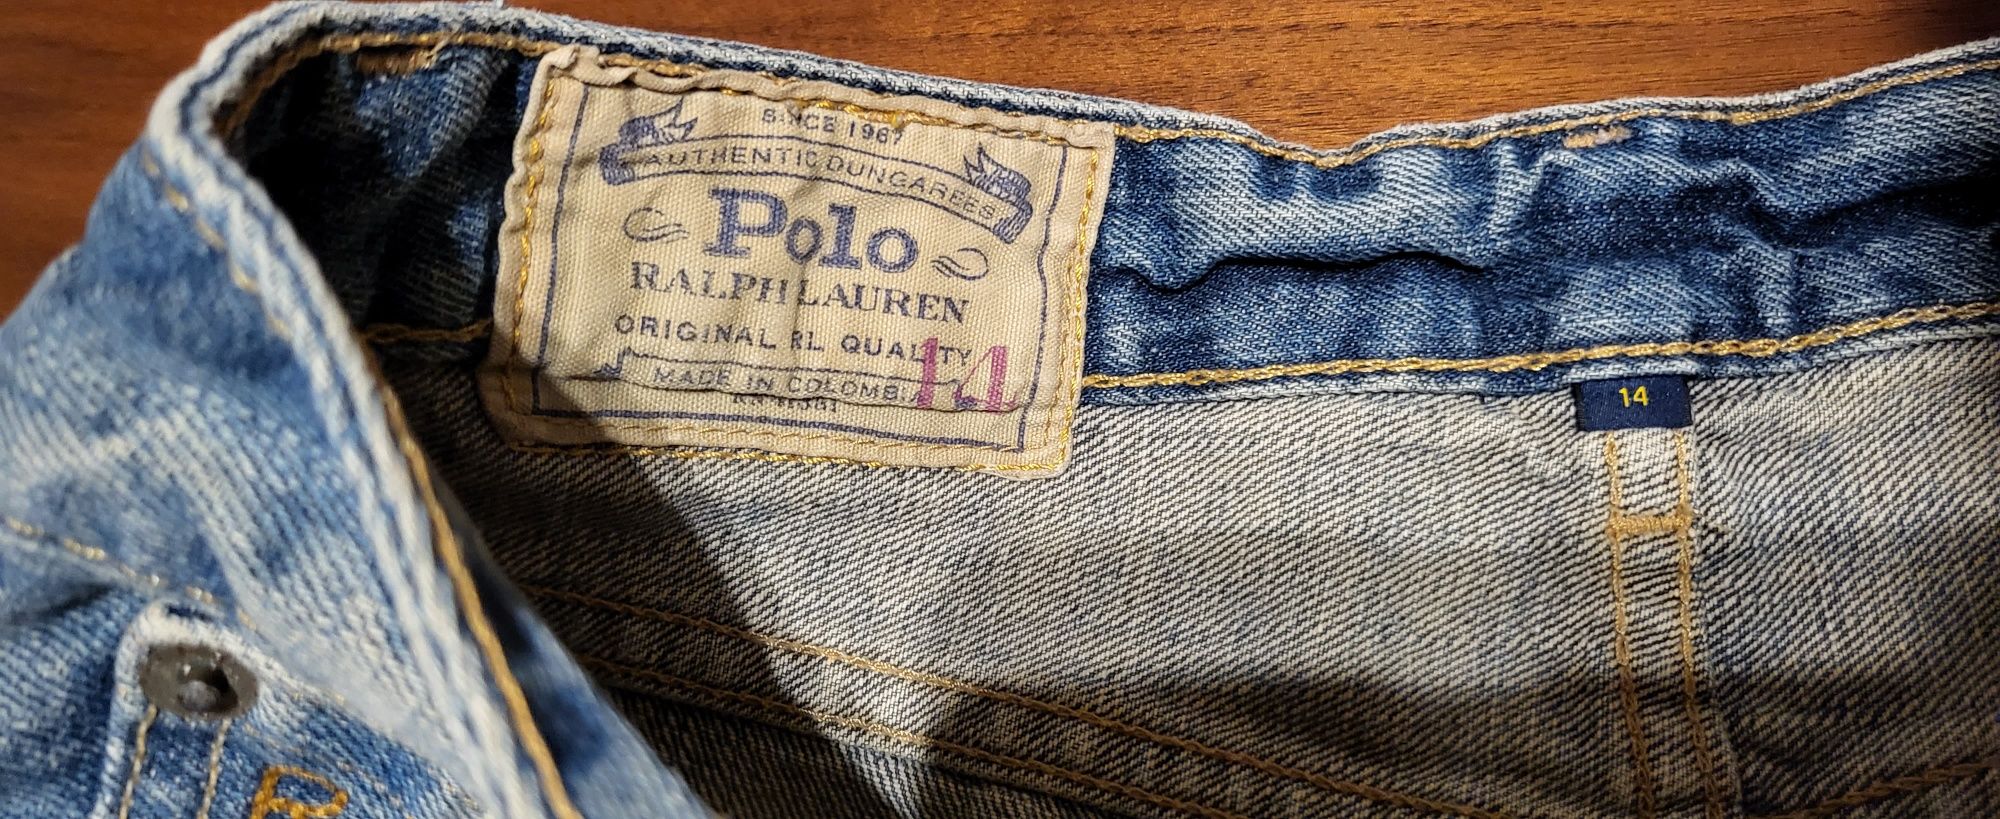 Vand pantaloni scurți/bermude băieți Ralph Lauren